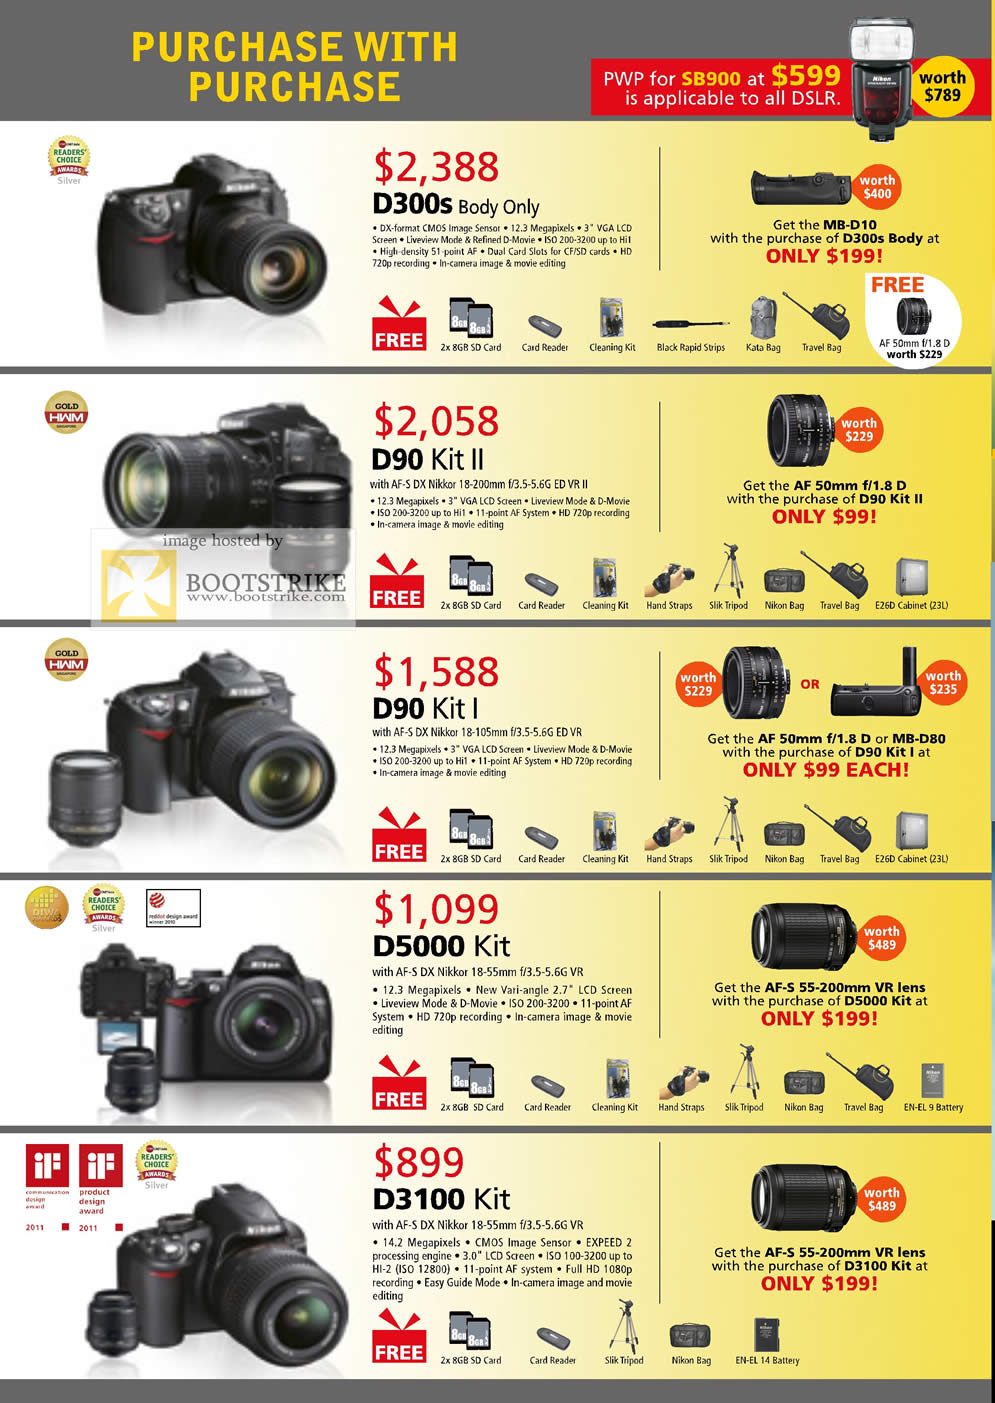 IT Show 2011 price list image brochure of Nikon Digital Cameras DSLR D300s Body D90 Kit D90 Kit II D90 Kit I D5000 Kit D3100